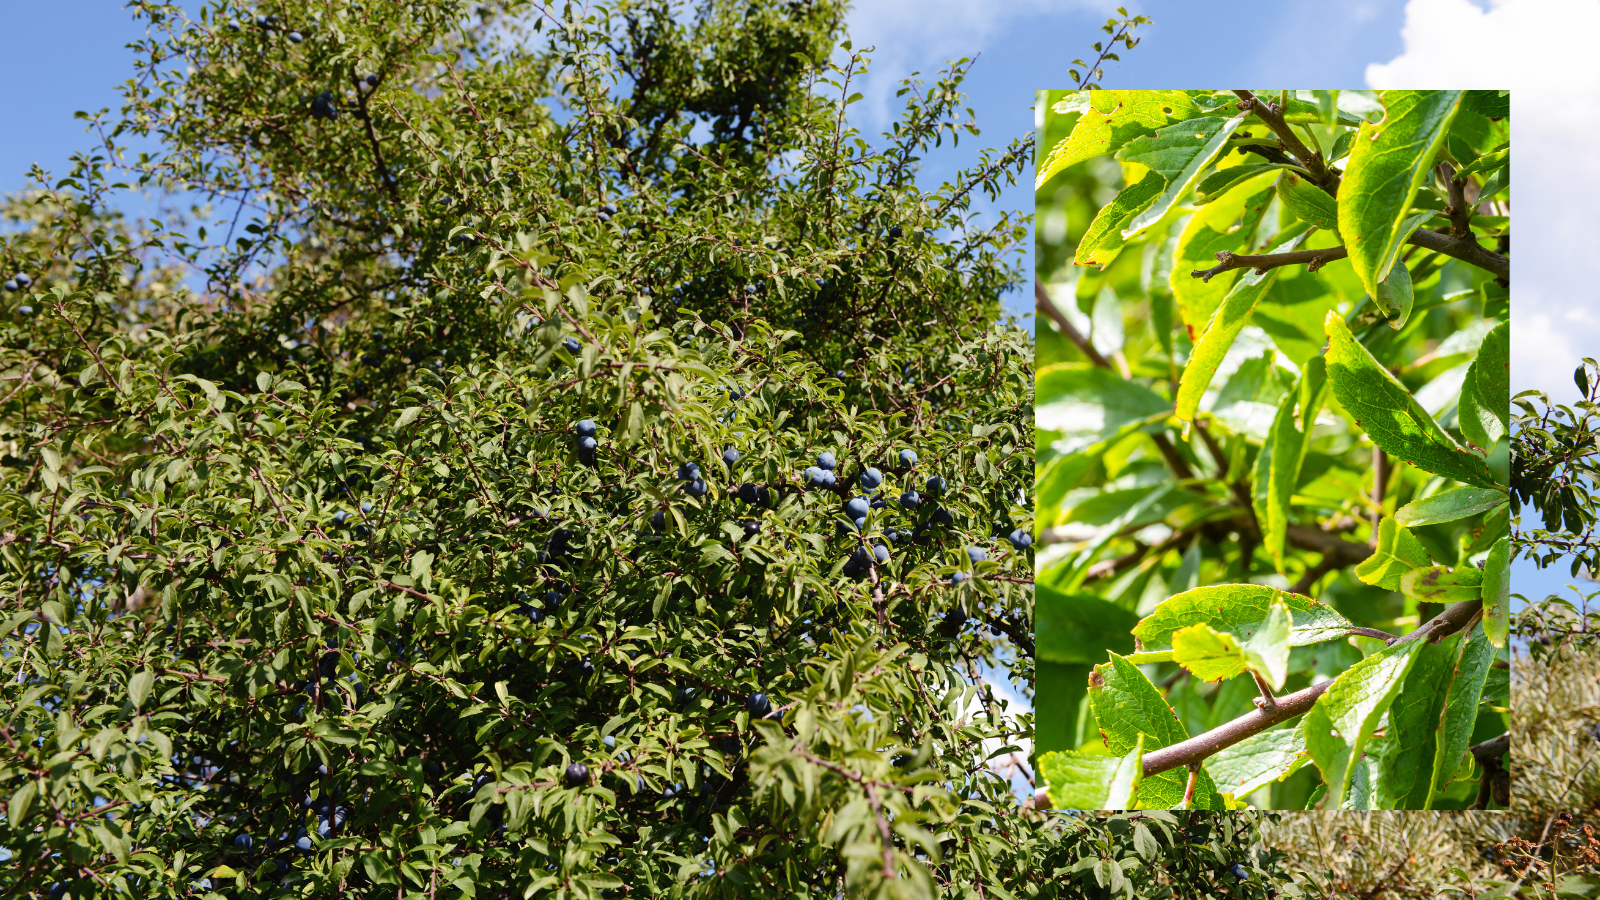 Blackthorn (Prunus spinosa) (Leaves)